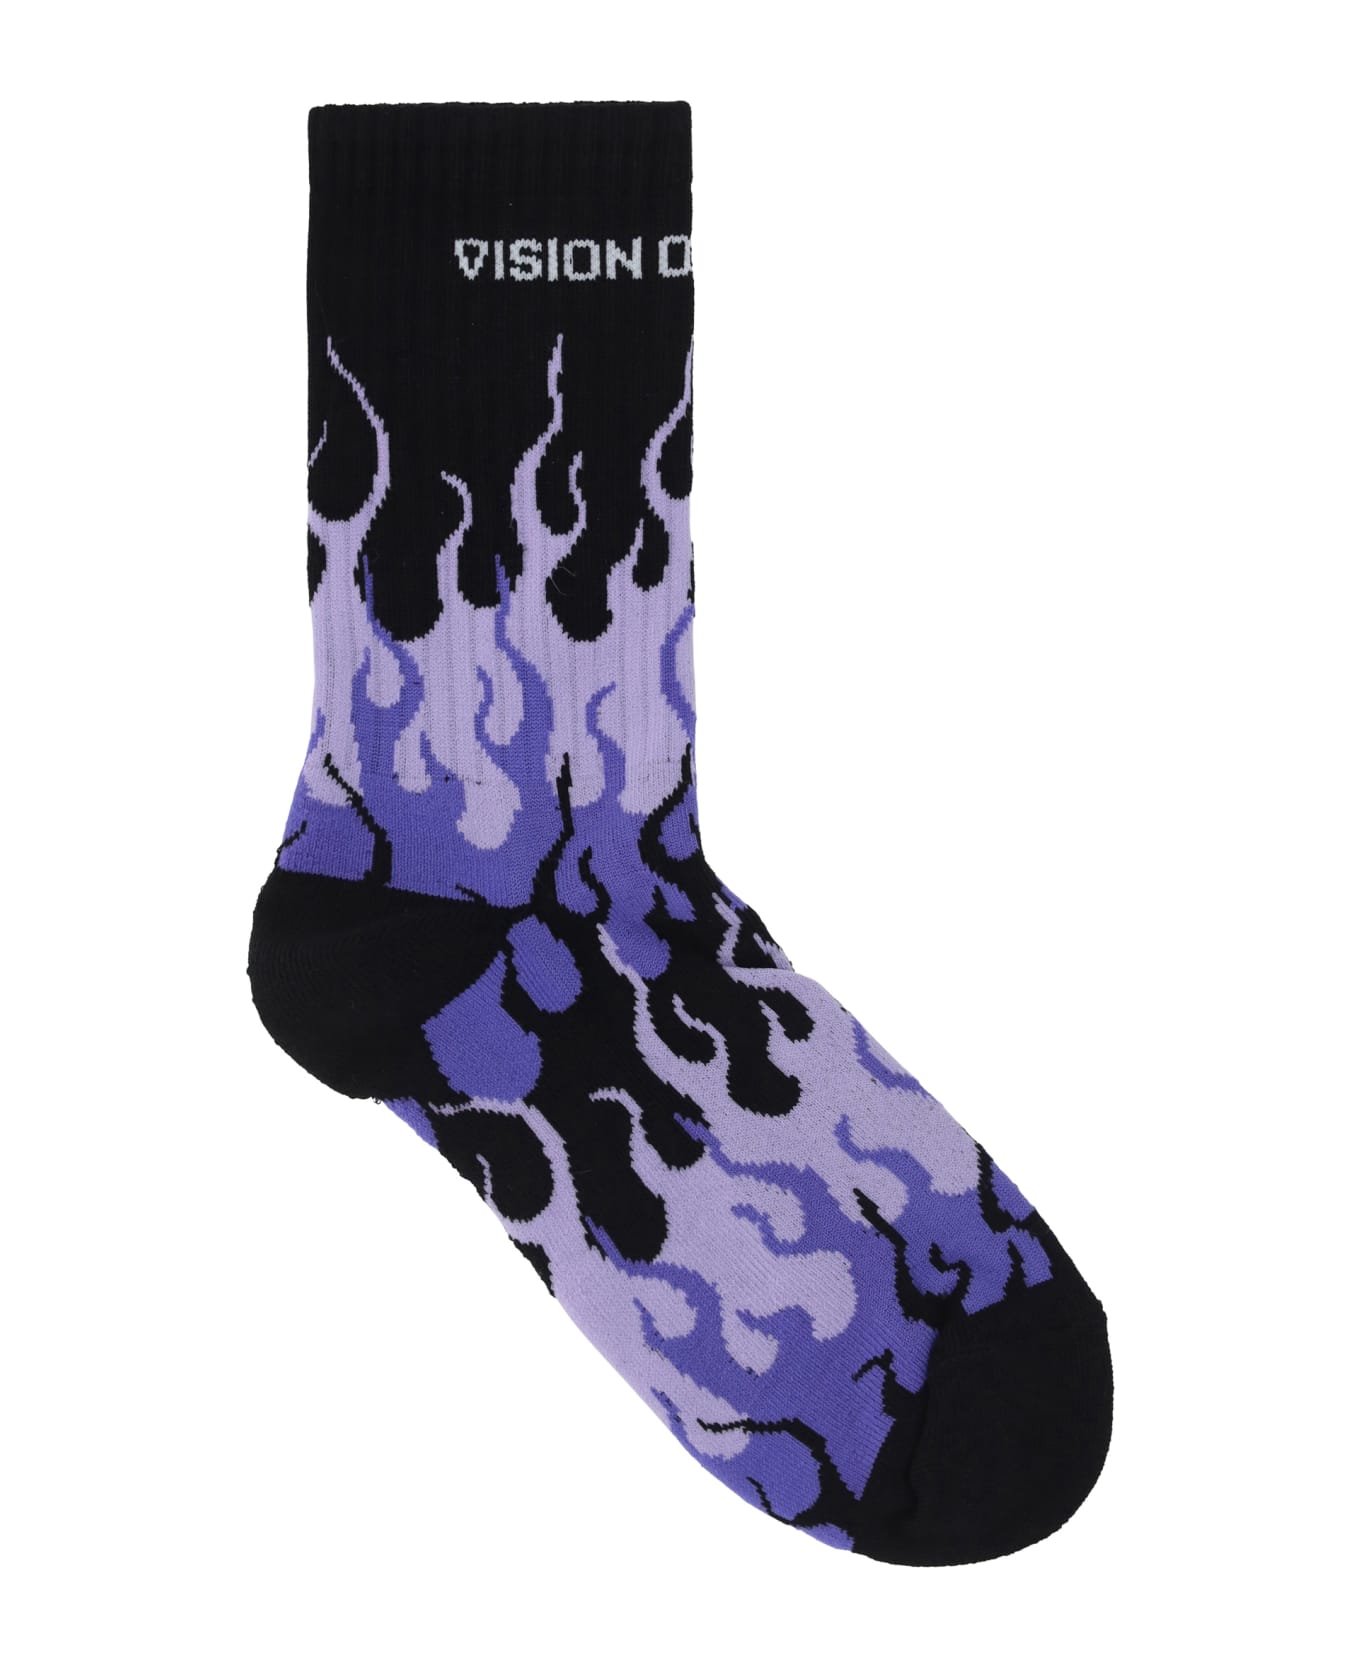 Vision of Super Socks - Black